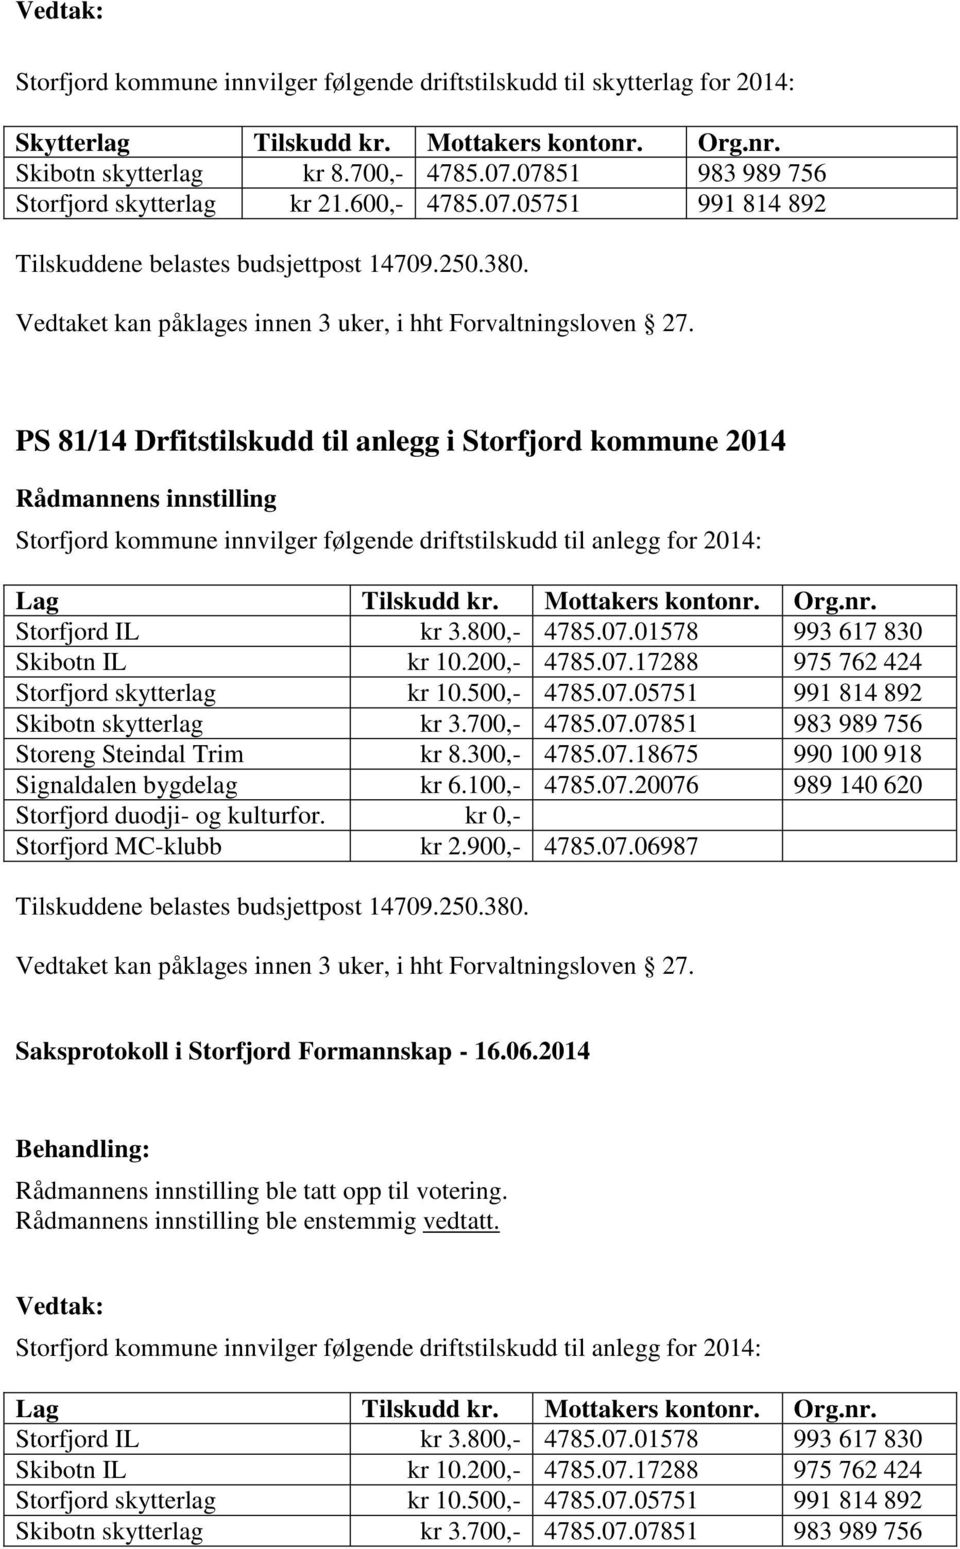 PS 81/14 Drfitstilskudd til anlegg i Storfjord kommune 2014 Storfjord kommune innvilger følgende driftstilskudd til anlegg for 2014: Lag Tilskudd kr. Mottakers kontonr. Org.nr. Storfjord IL kr 3.